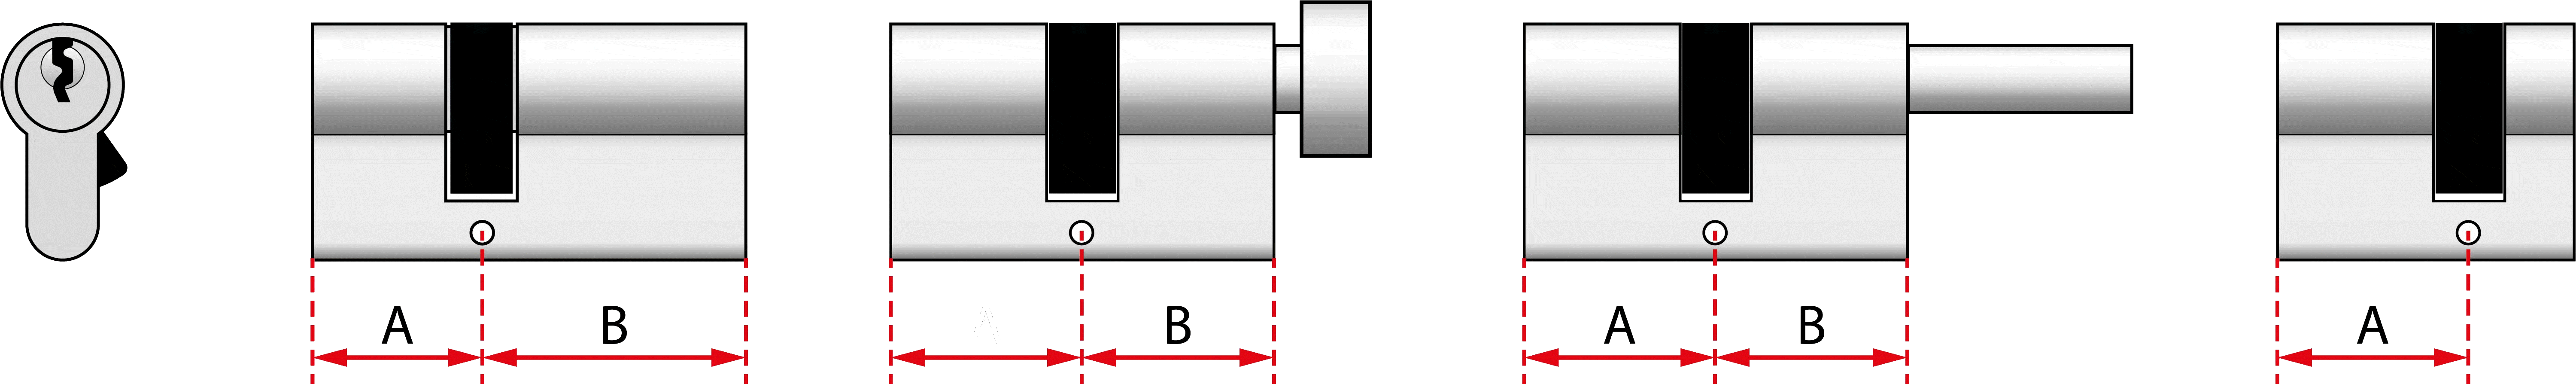 misura cilindri